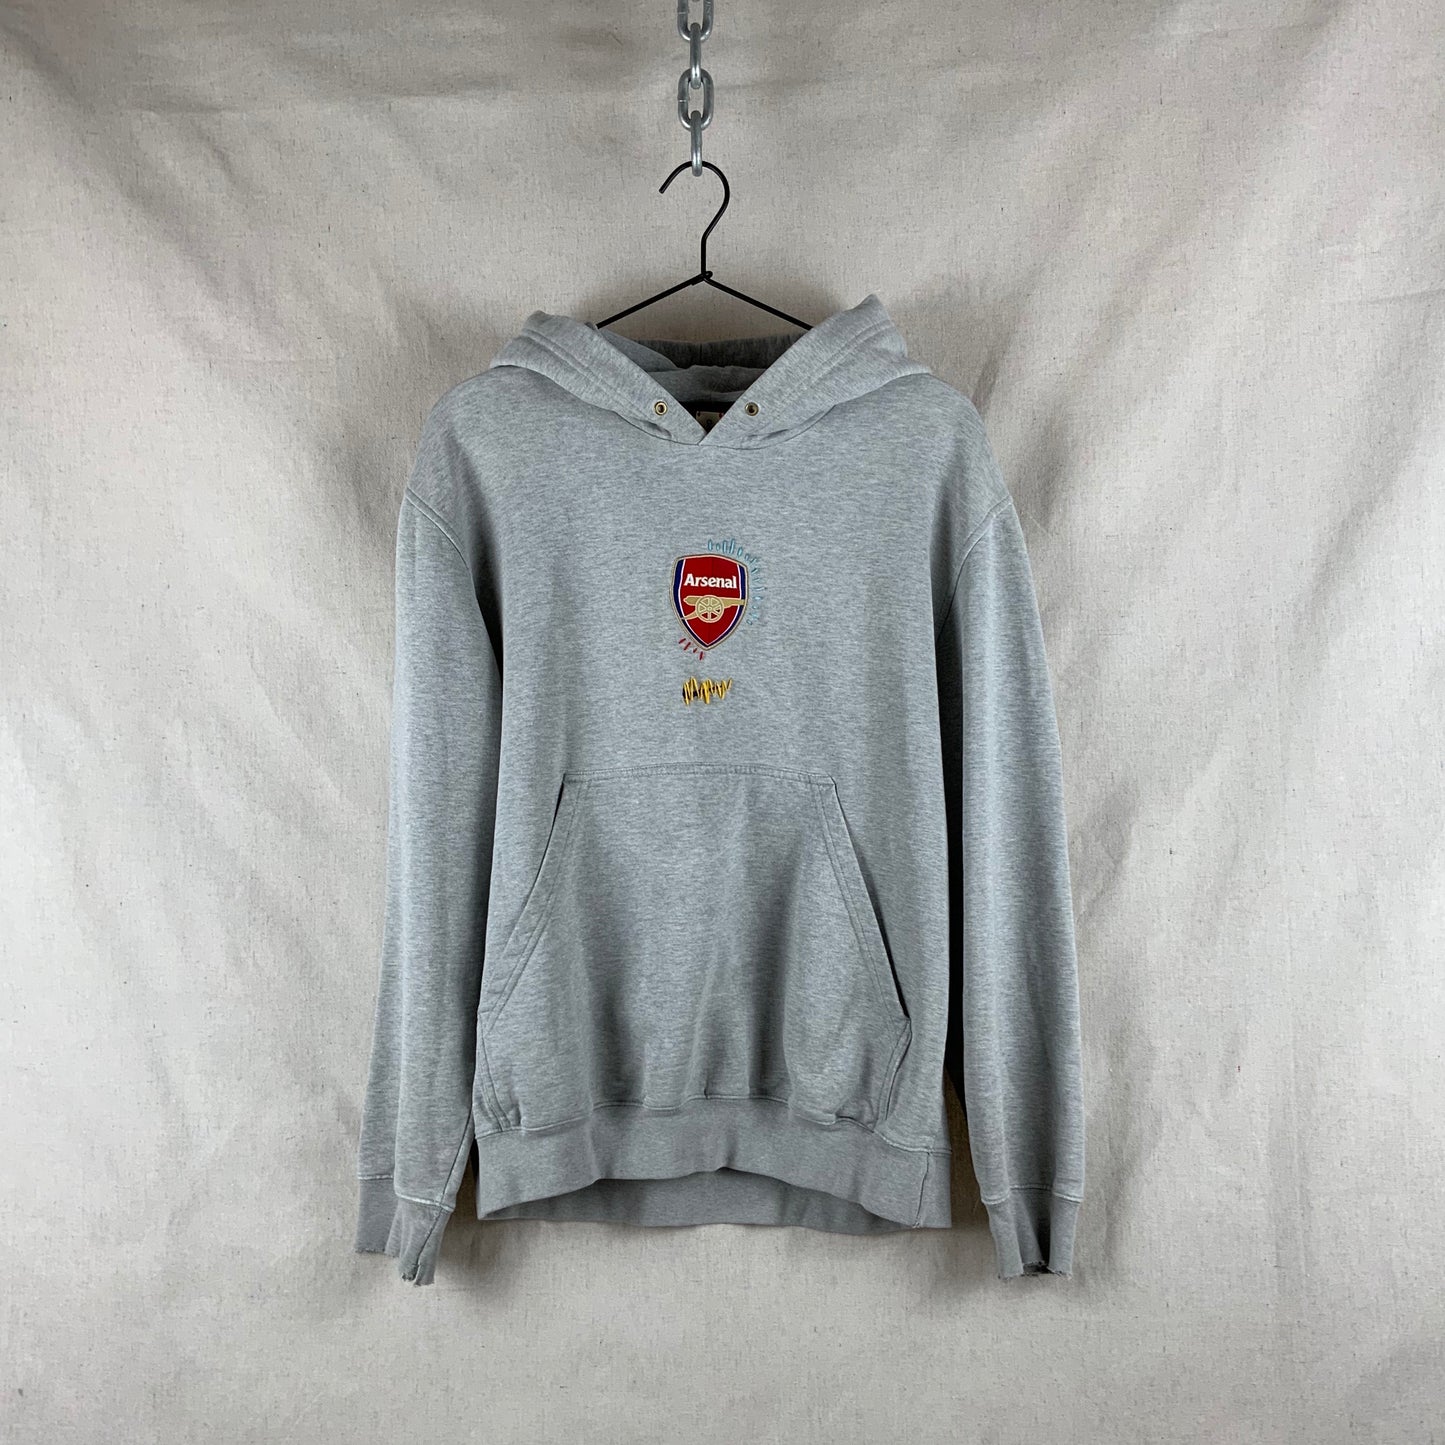 Arsenal Hooded Sweatshirt